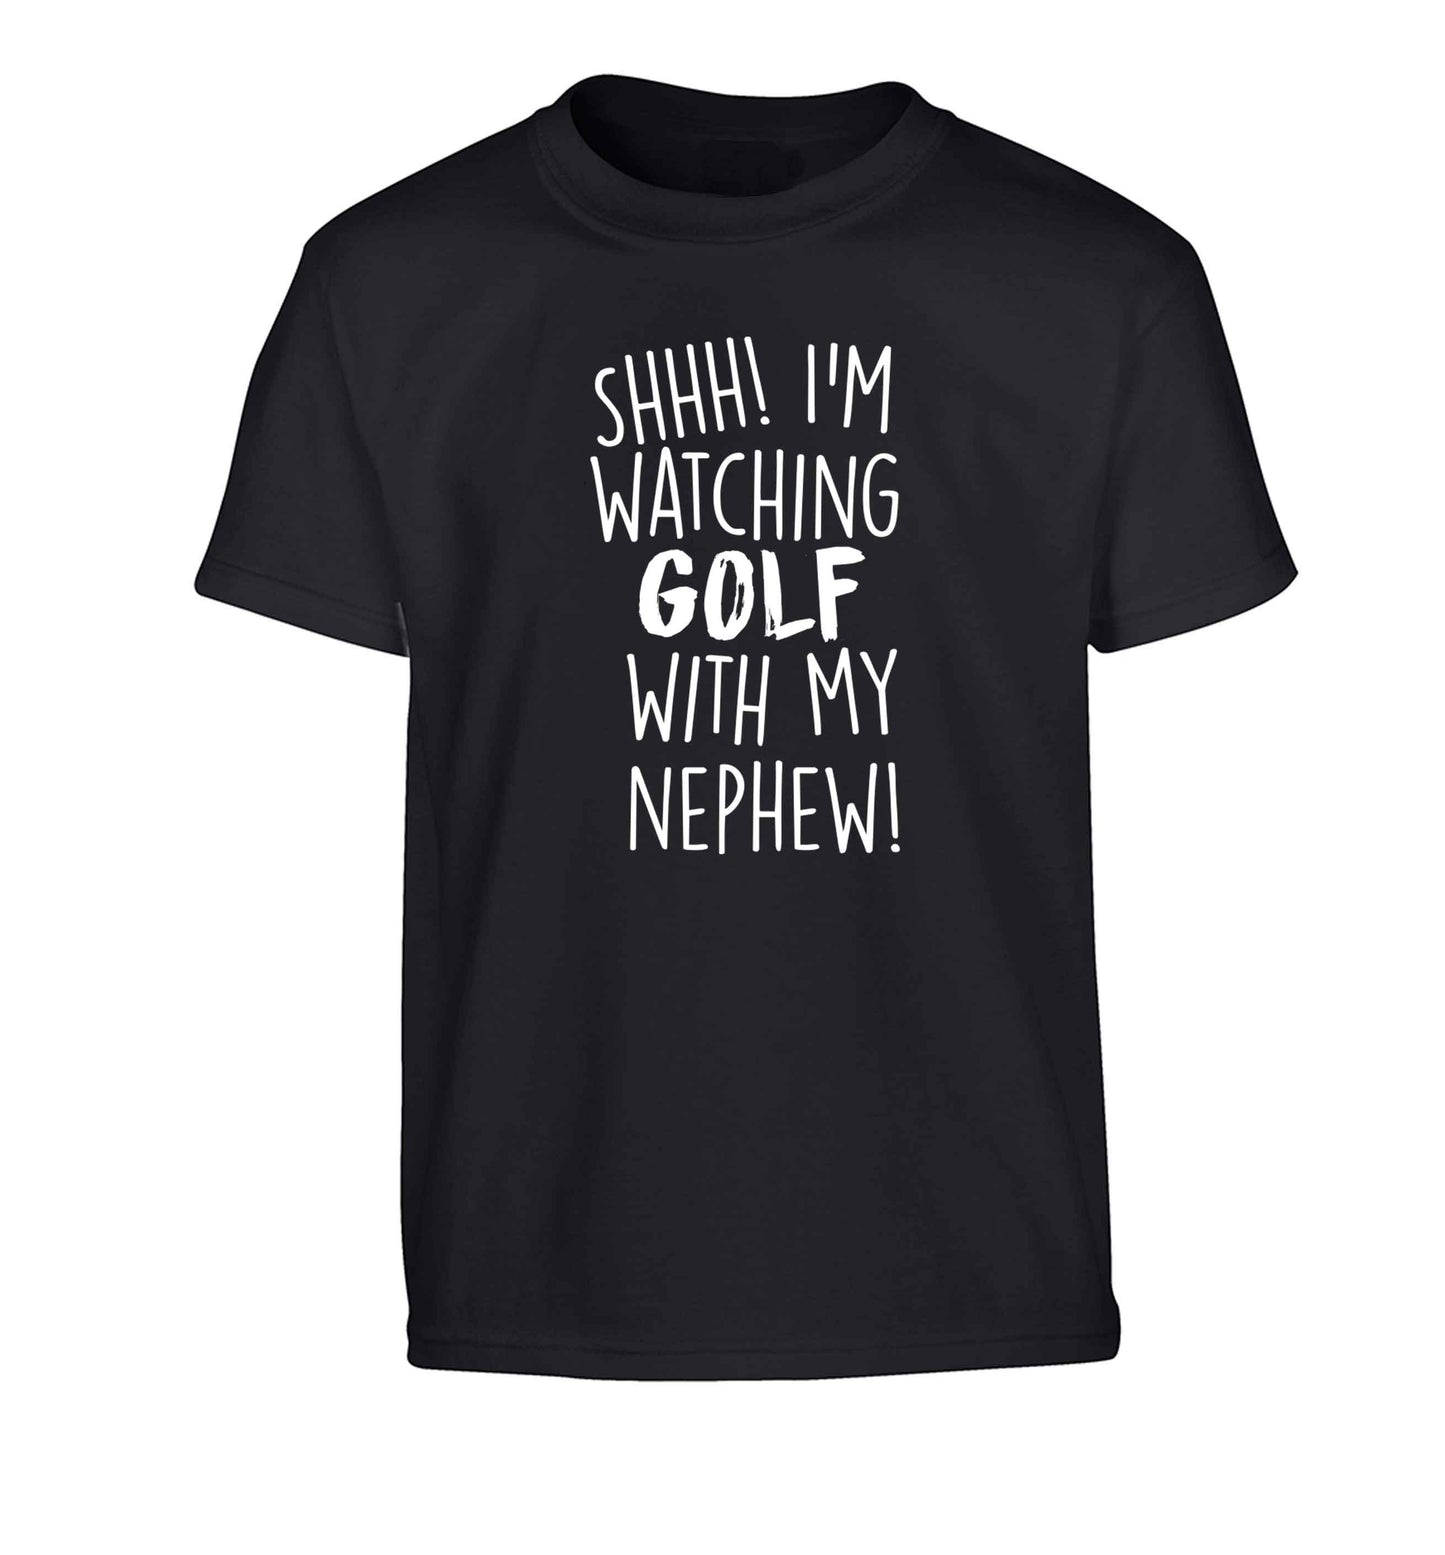 Shh I'm watching golf with my nephew Children's black Tshirt 12-13 Years